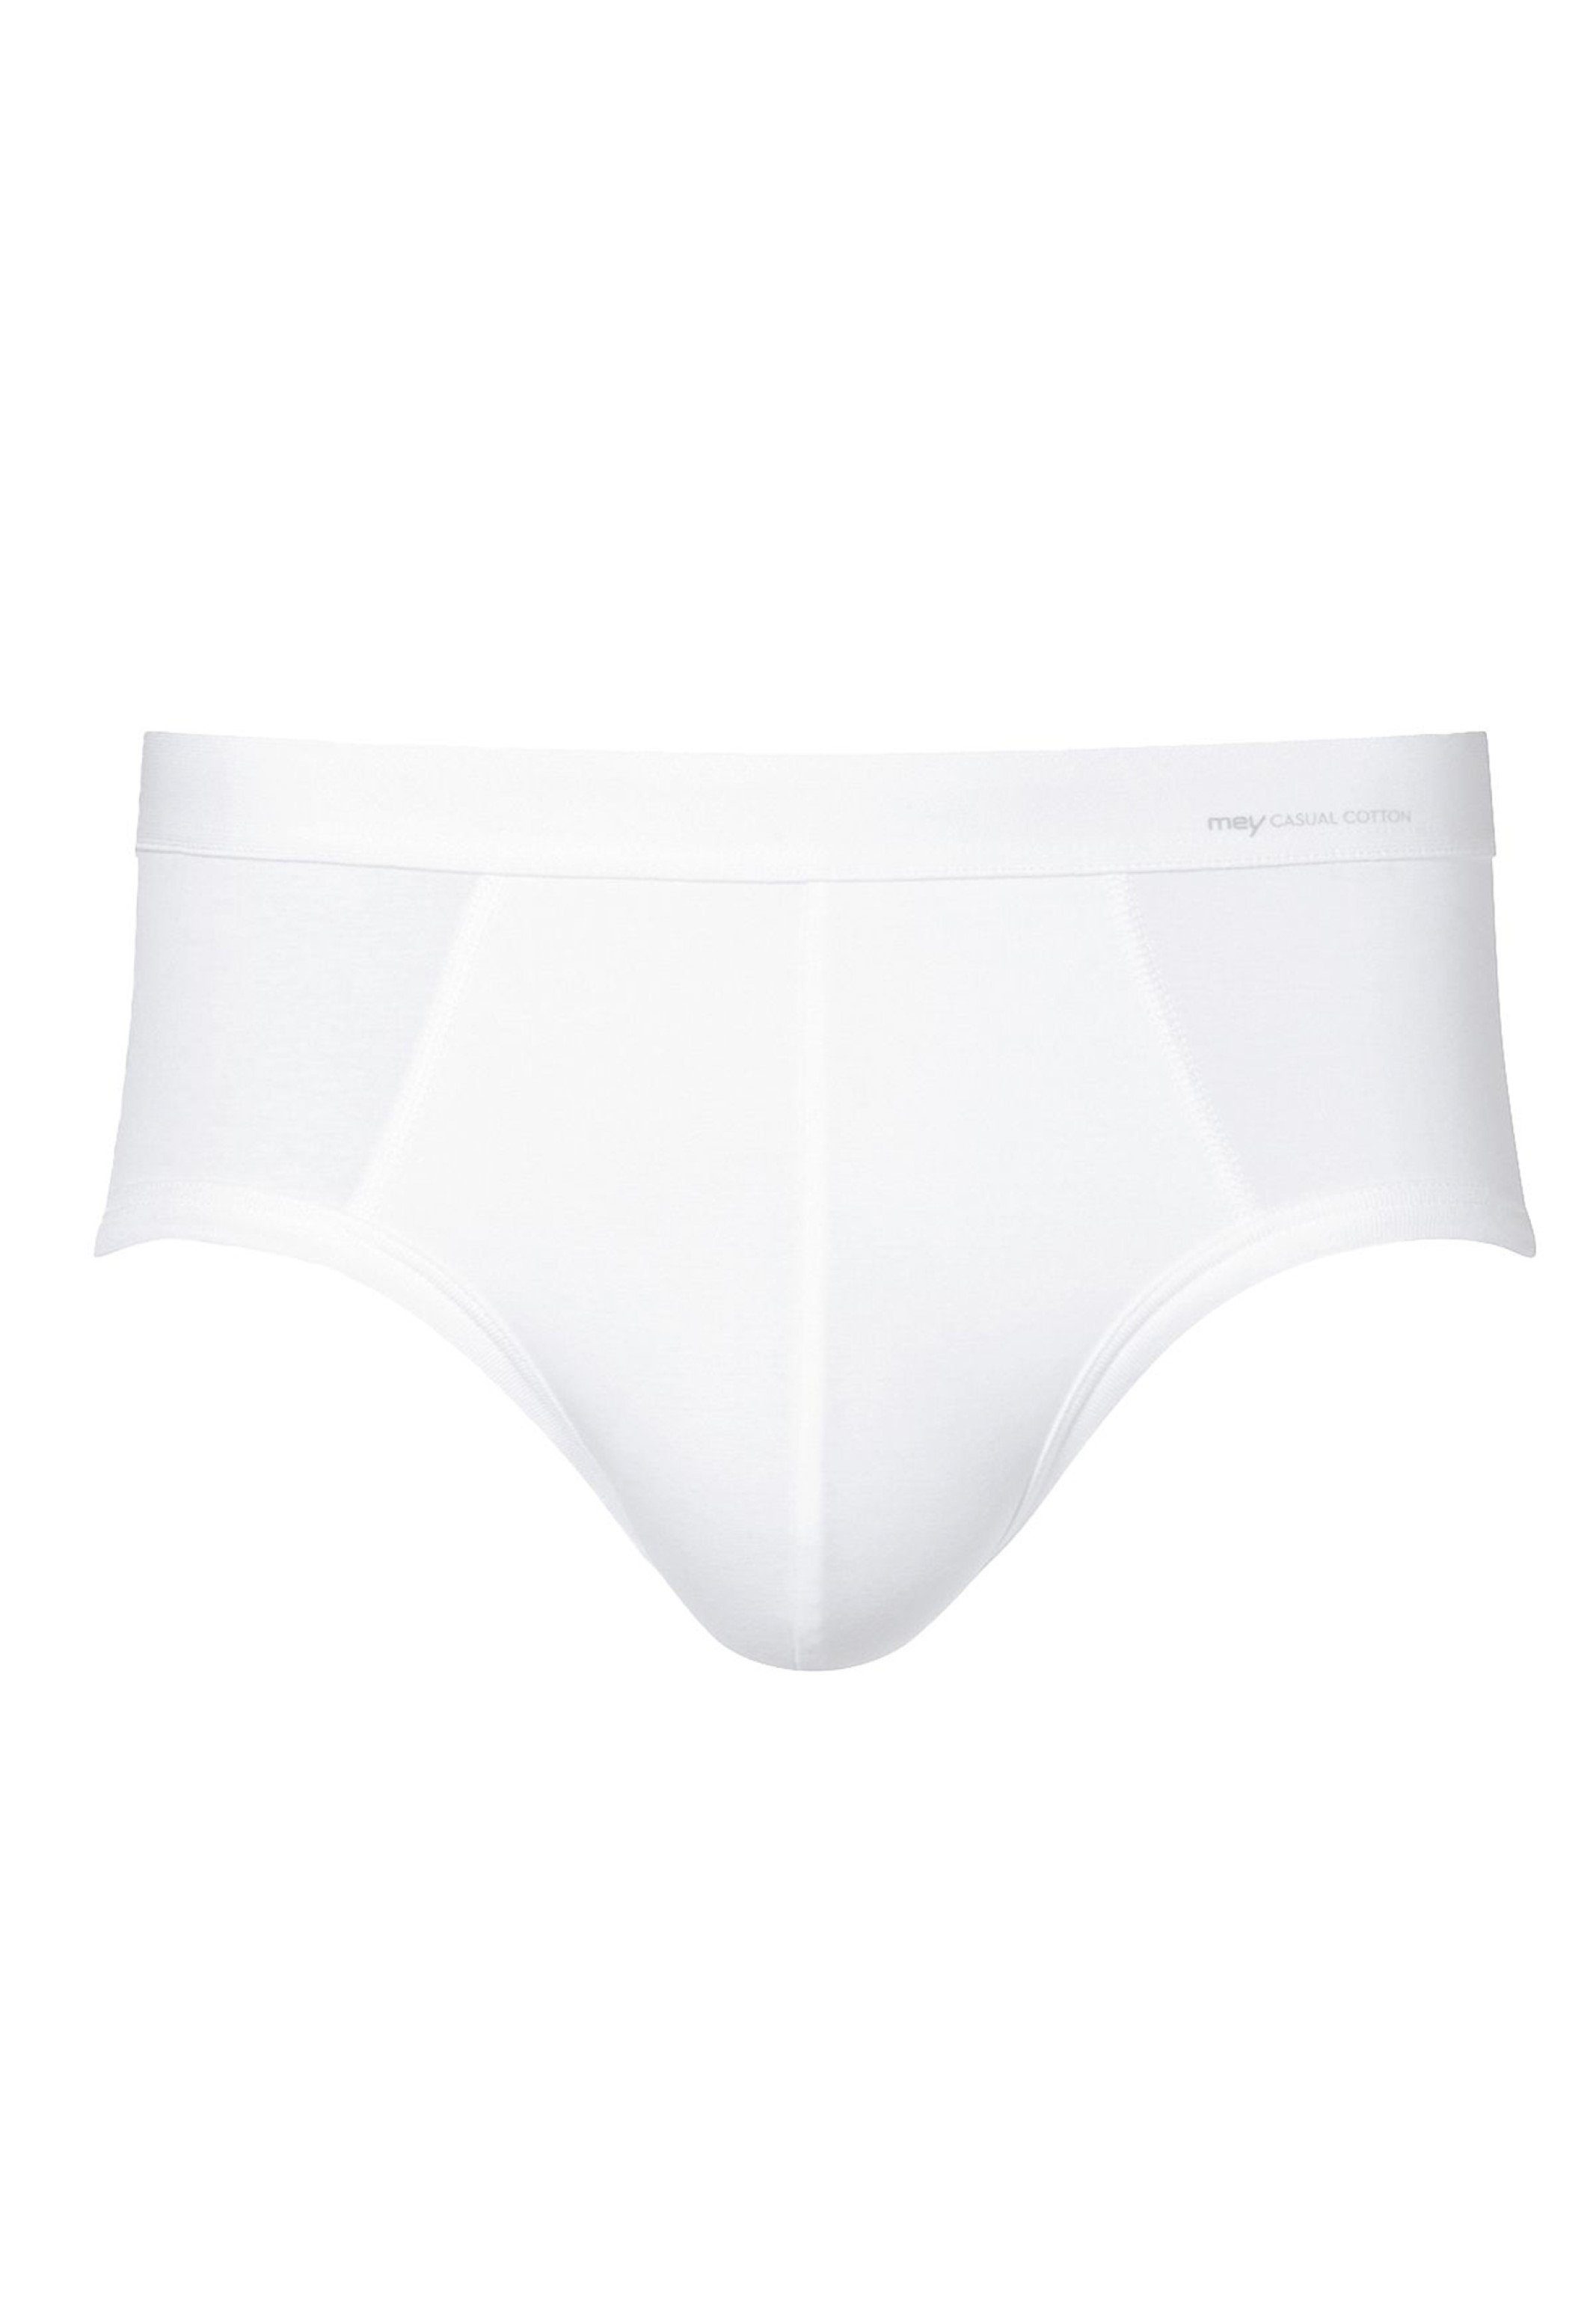 Mey Slip Casual Cotton - Slip (1-St) - Weiß Unterhose Ohne Eingriff Webbund / Baumwolle Aufgesetzter 